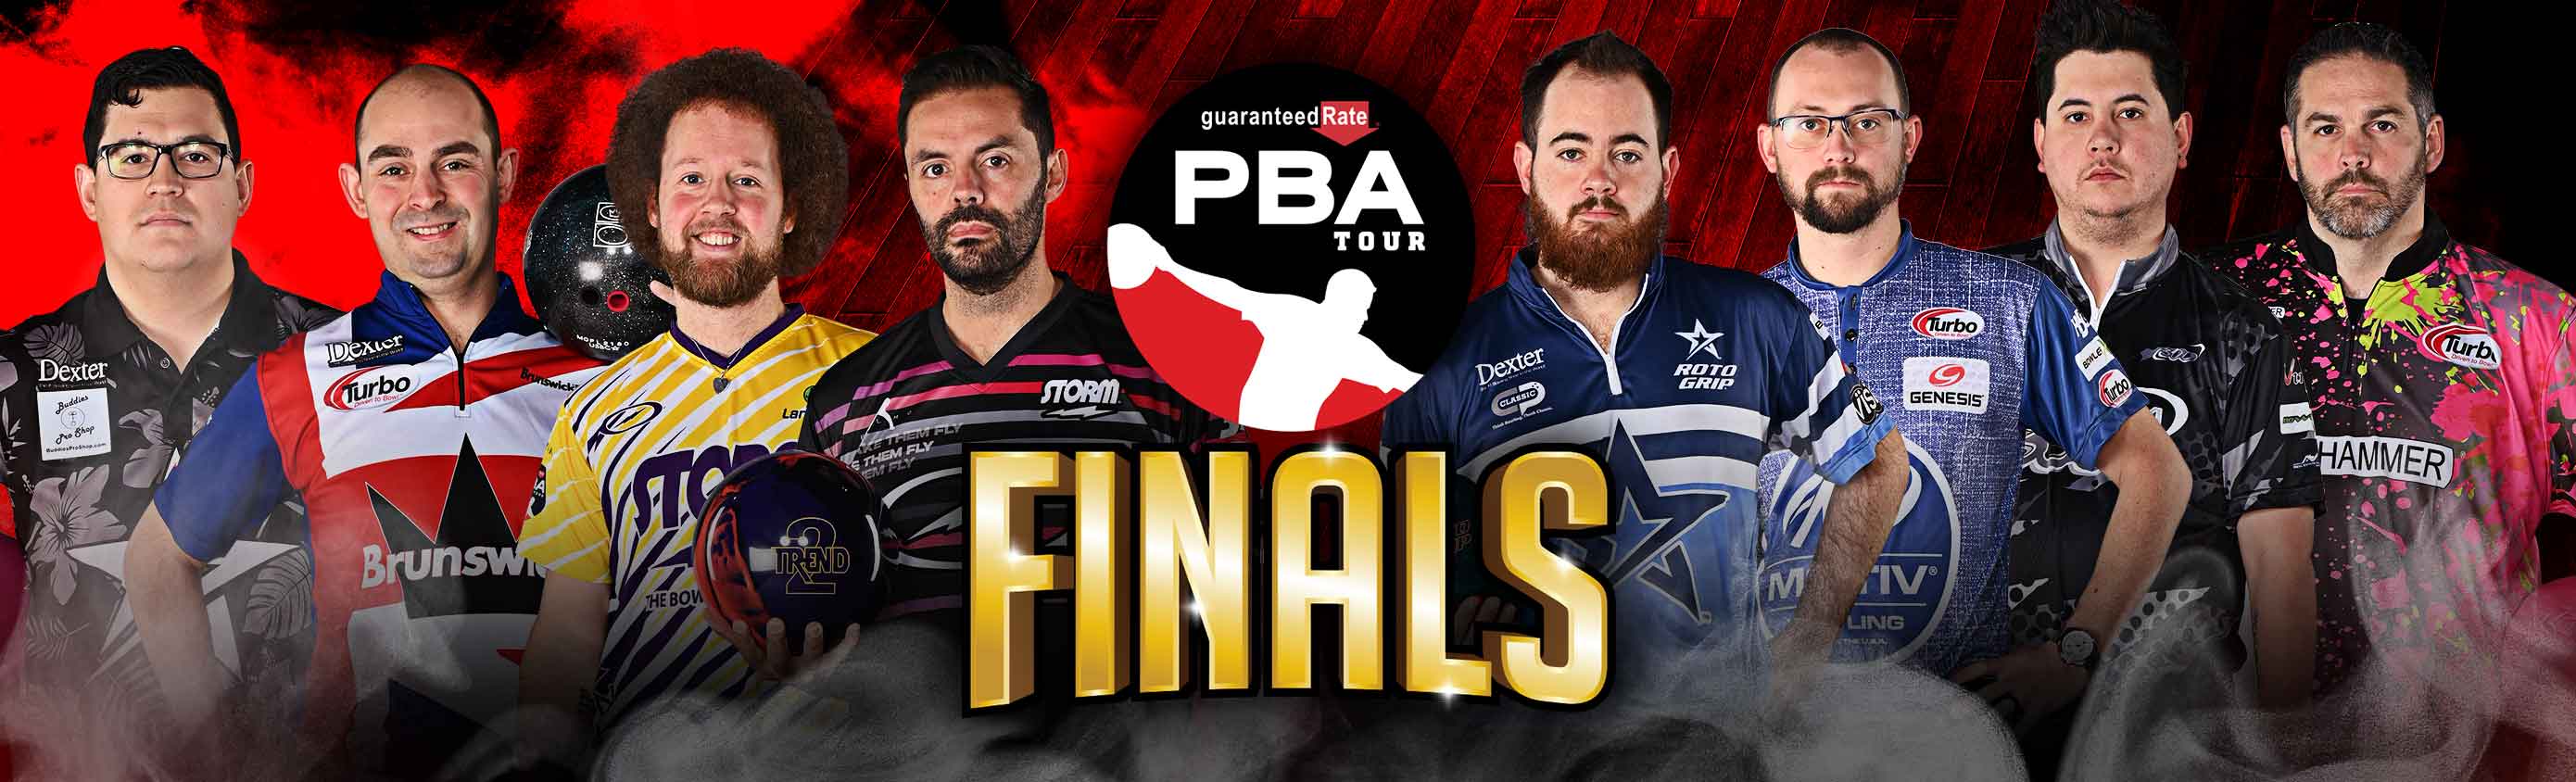 pba tour finals championship